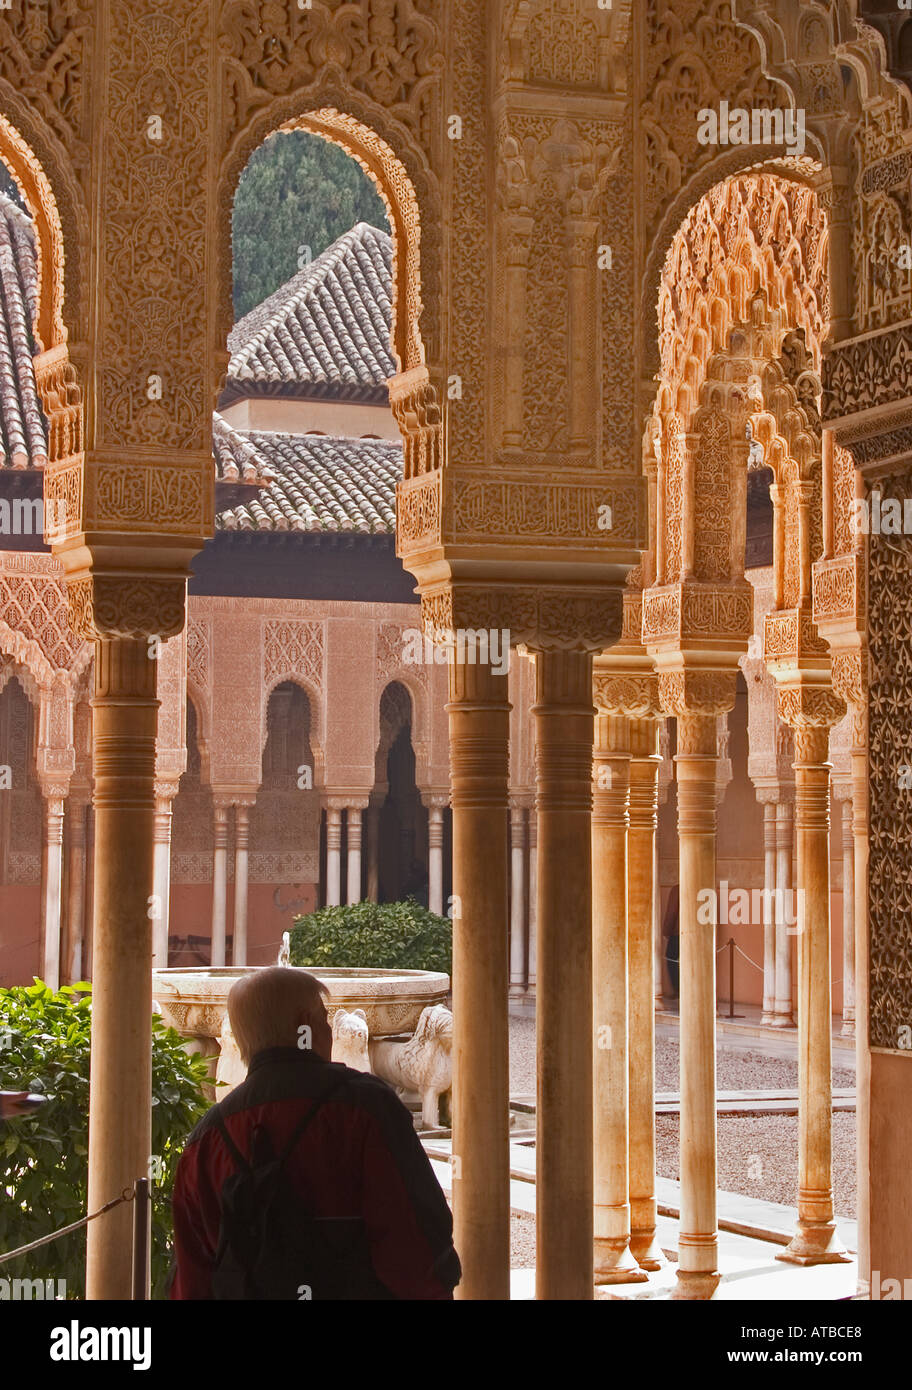 Granada, Espagne. La Alhambra. Patio de los Leones ou Cour des Lions Banque D'Images